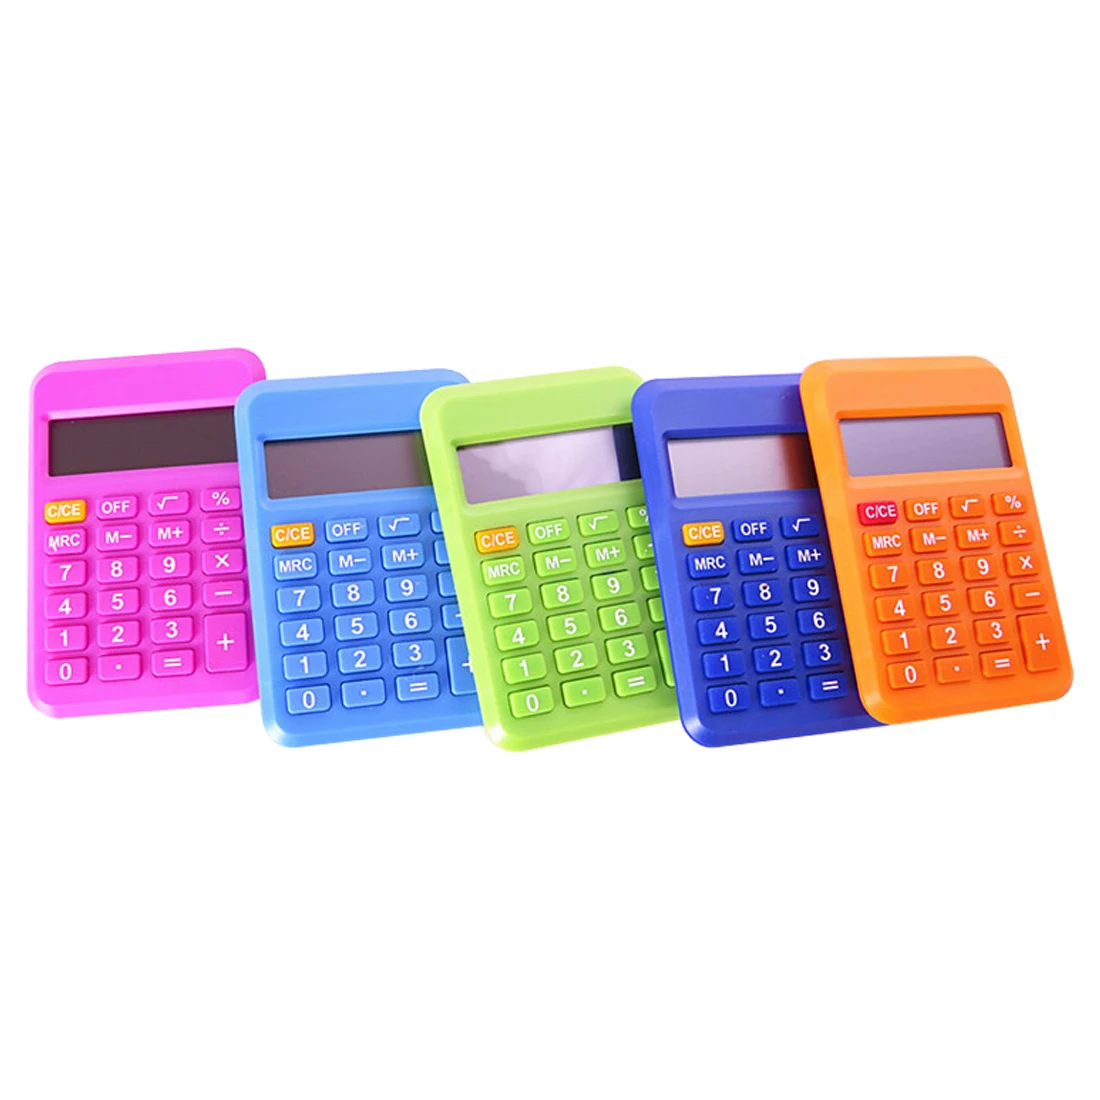 NOYOKERE Новое поступление студенческий мини электронный калькулятор карамельный цвет расчетные офисные принадлежности подарок 9*6 мм Размер случайный цвет